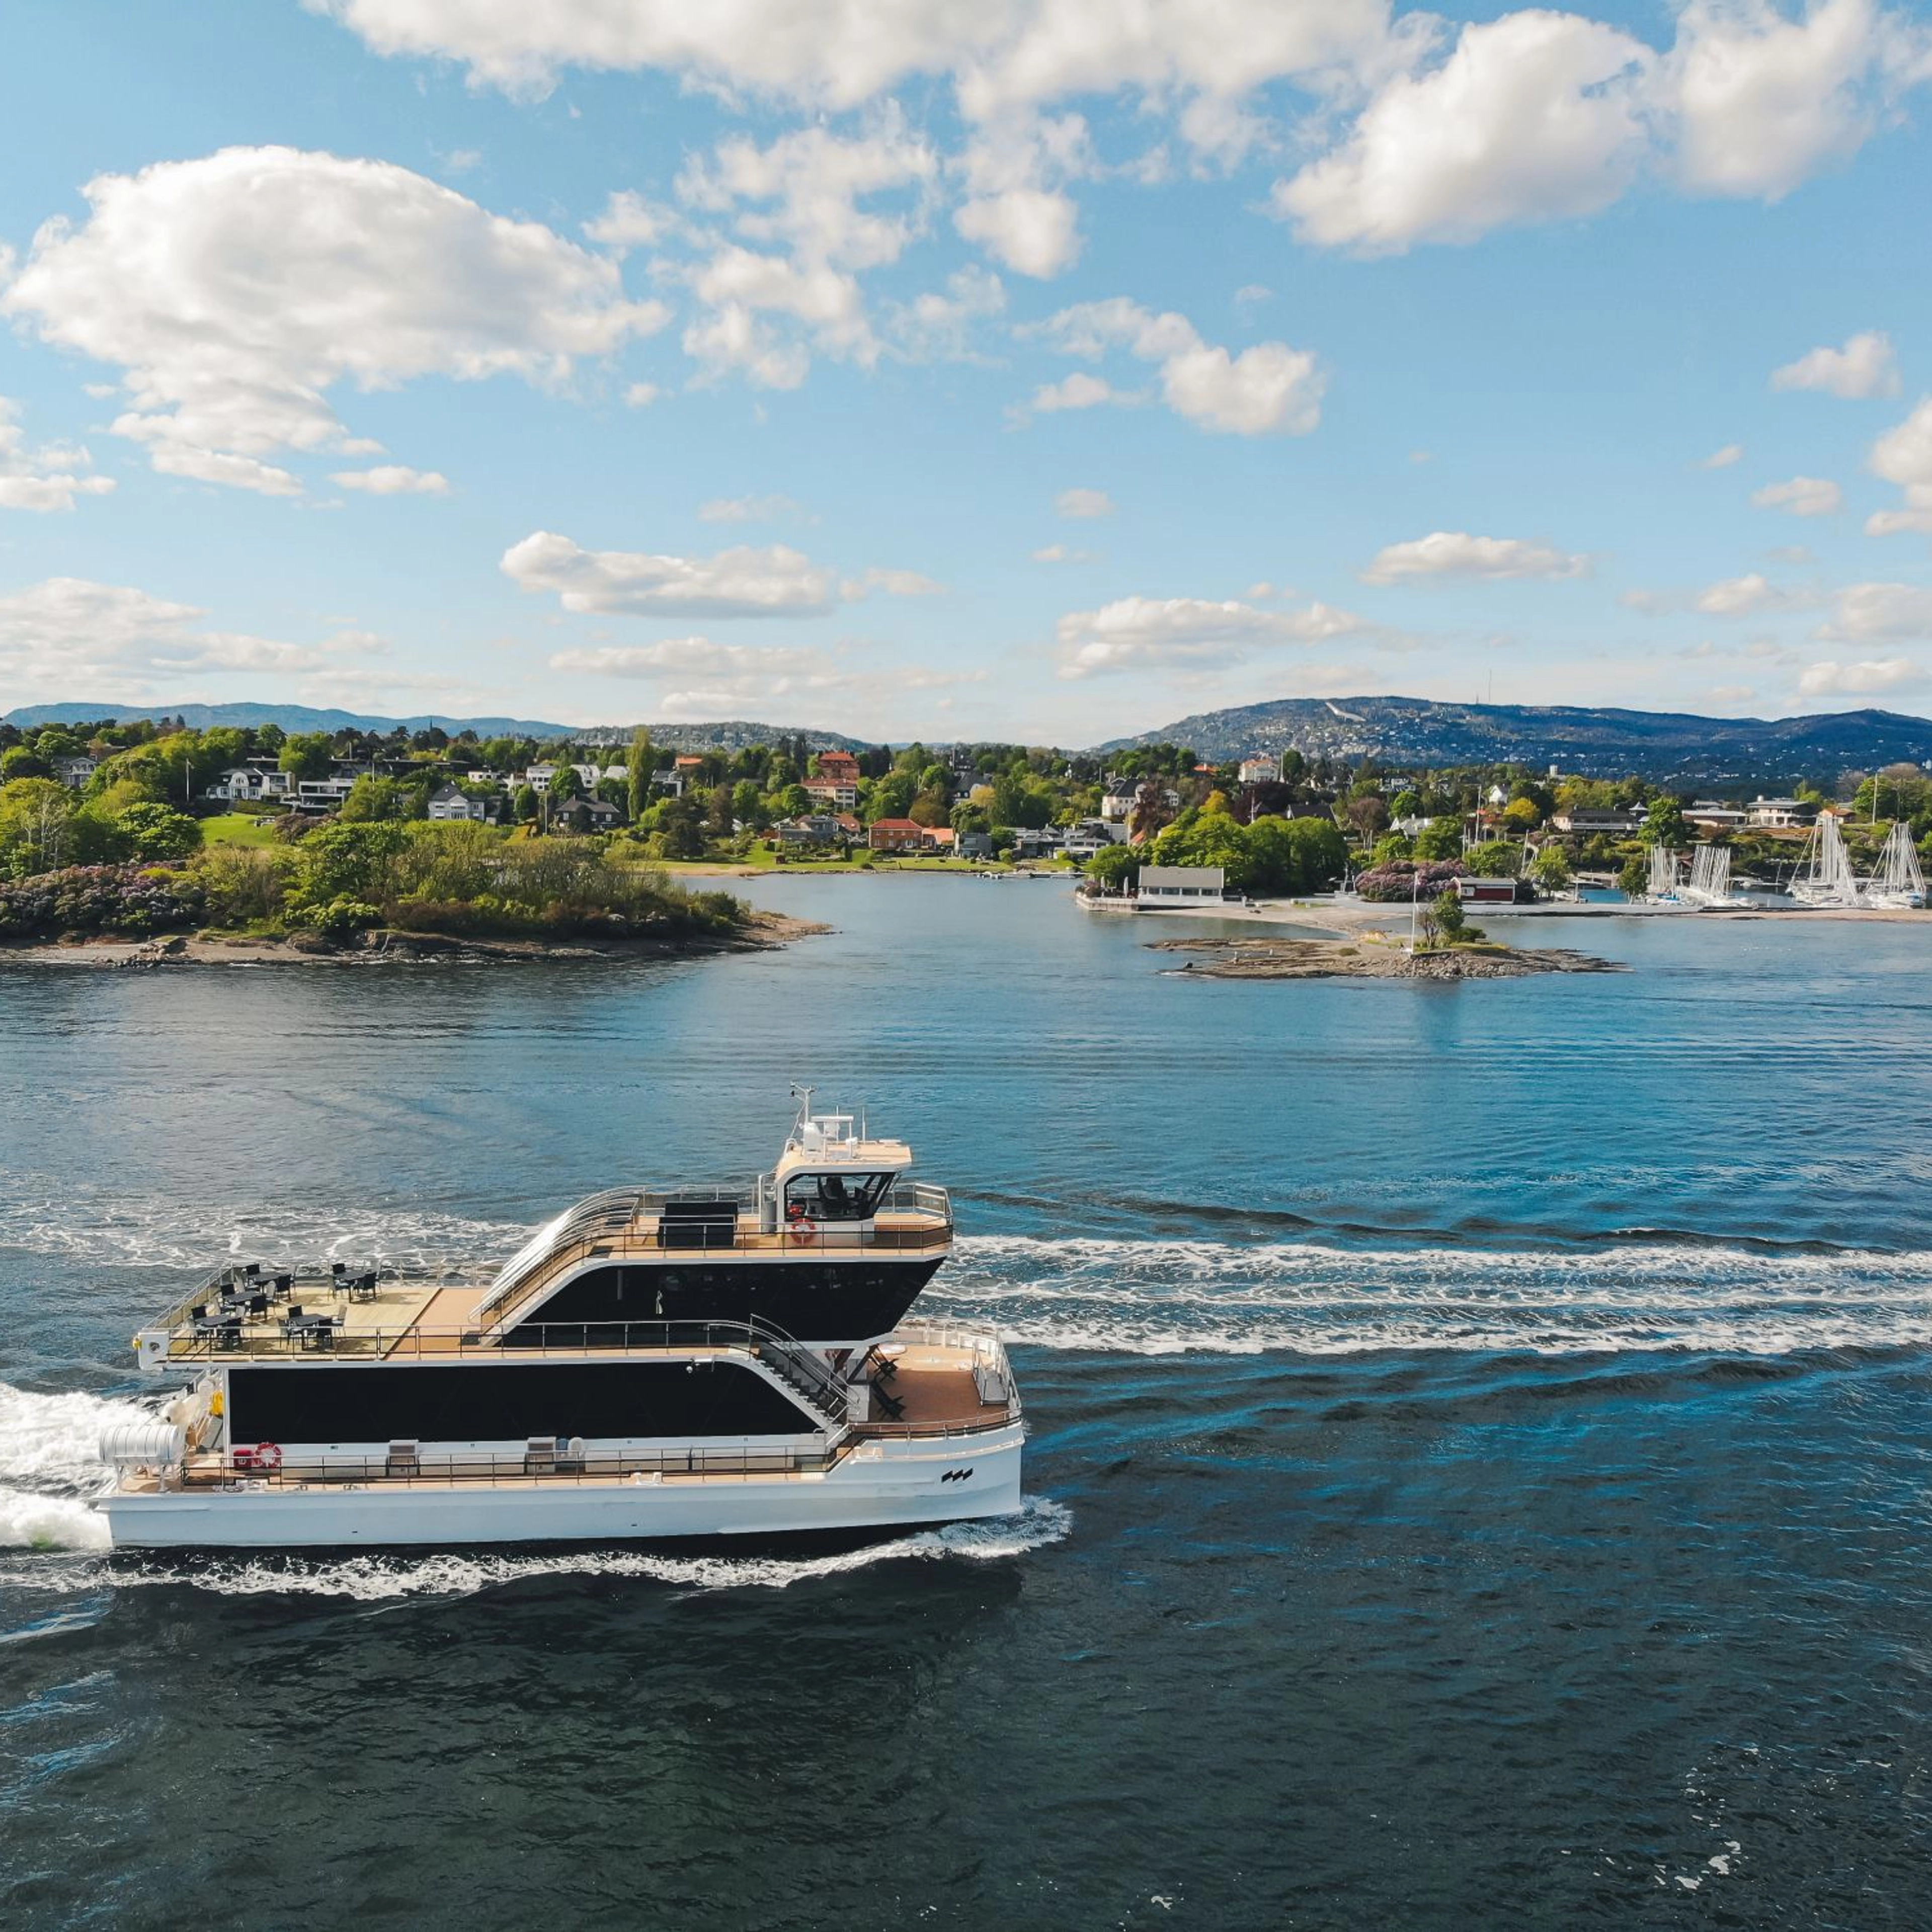 Oslofjordkreuzfahrt mit einem ruhigen Hybridboot - ein herrlicher Tag auf dem Fjord - Oslo, Norwegen